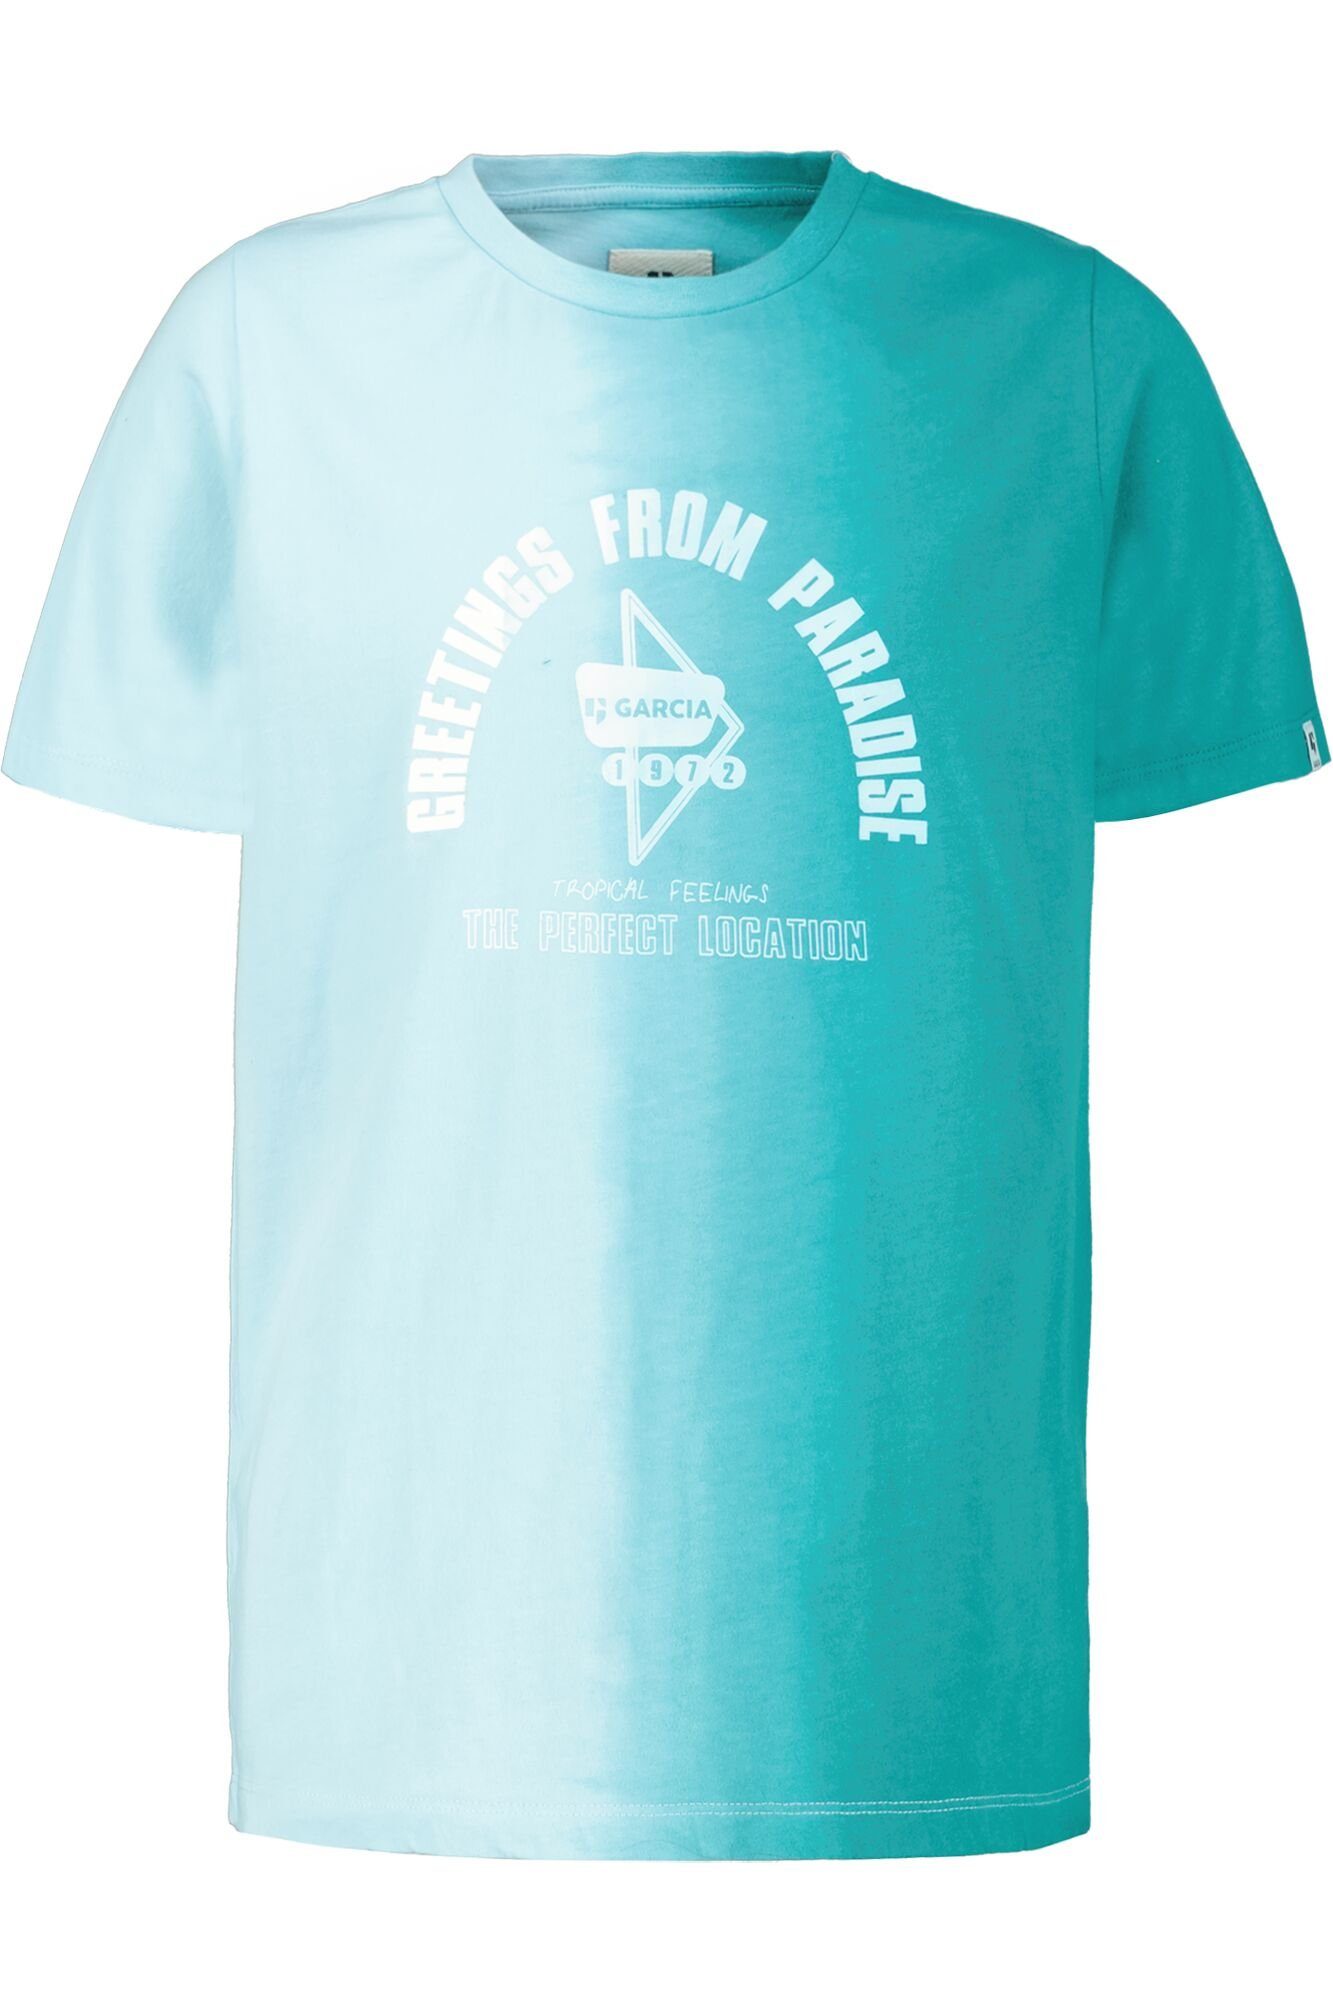 Garcia T-Shirt mit Farbverlauf ocean